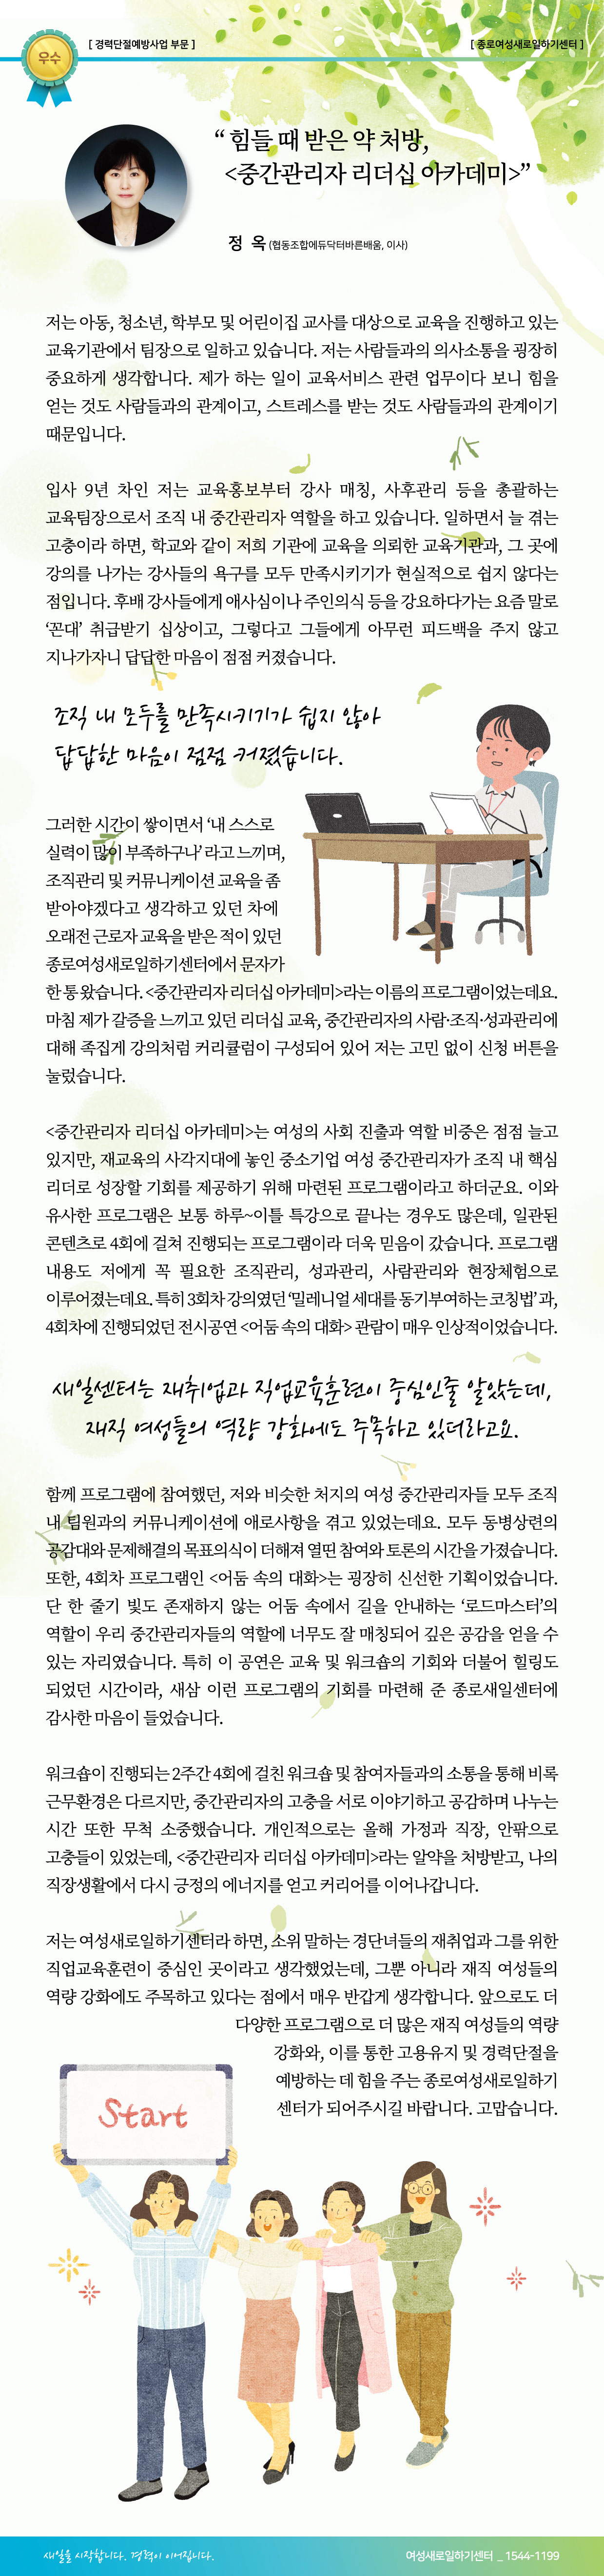 15.경단예방_우수_정옥-완성.jpg